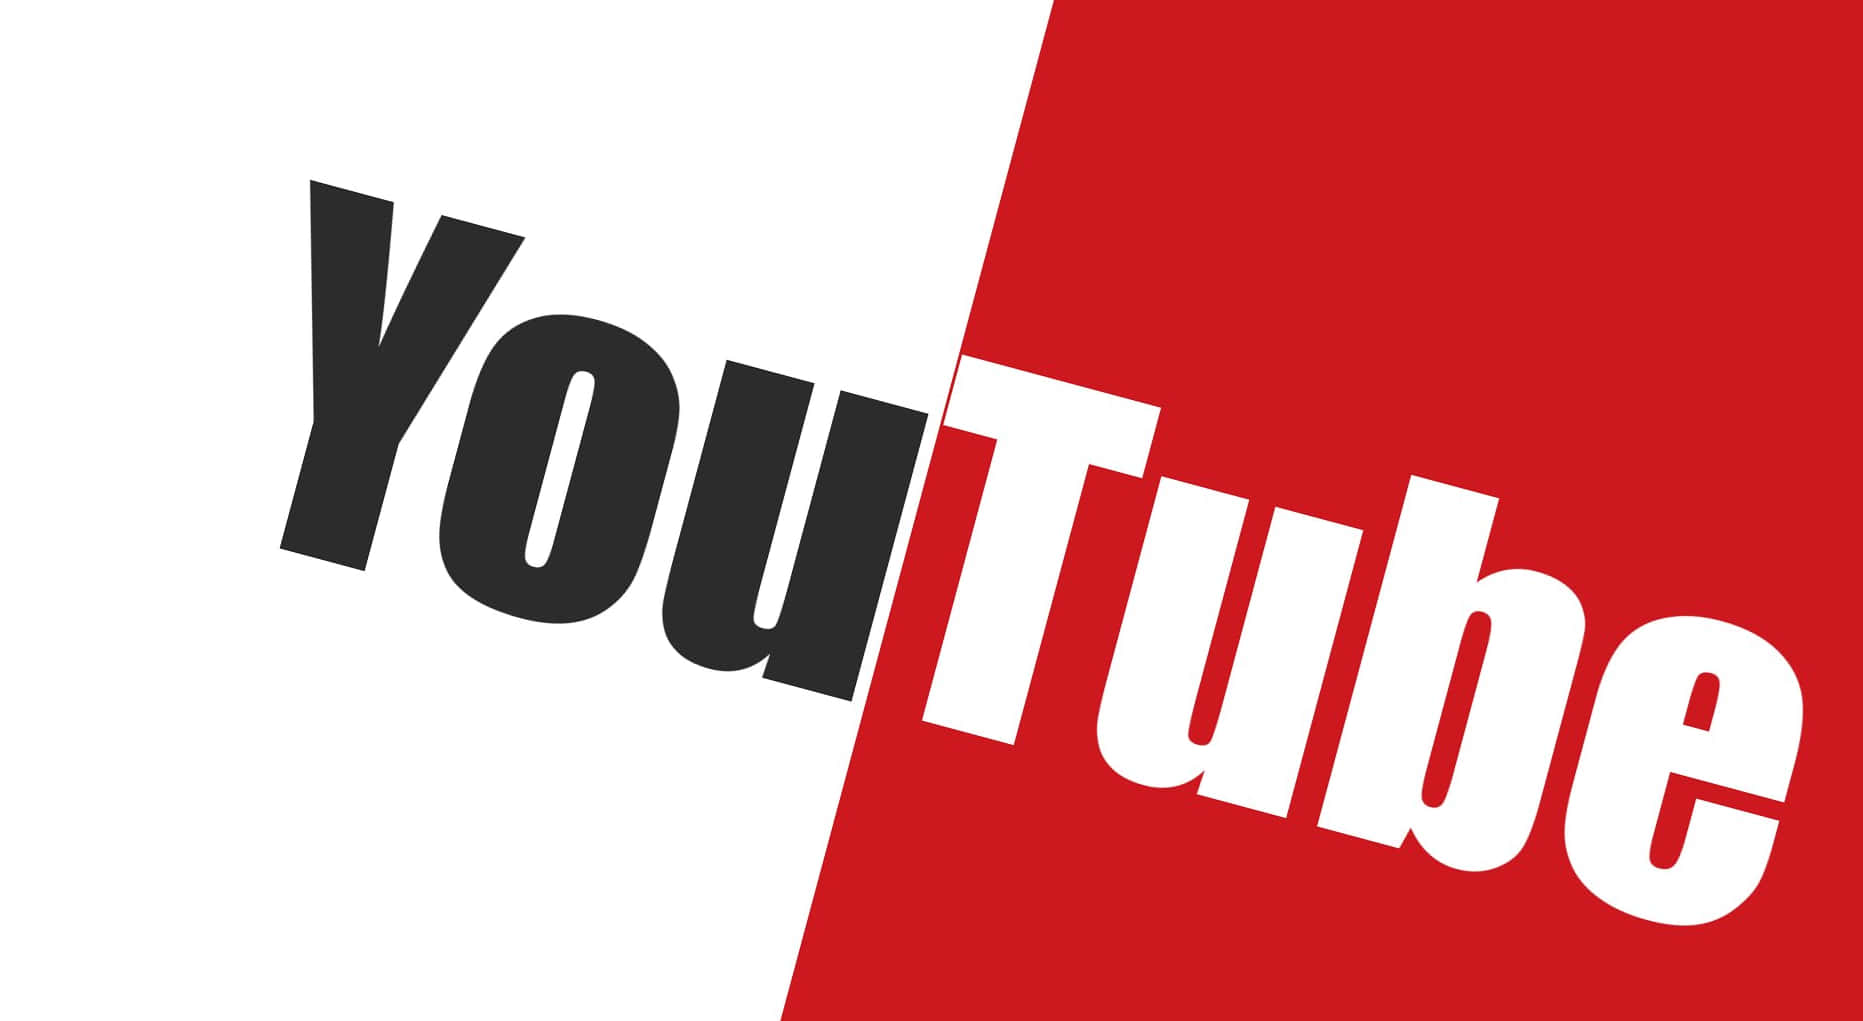 Logotipode Youtube Sobre Fondo Negro